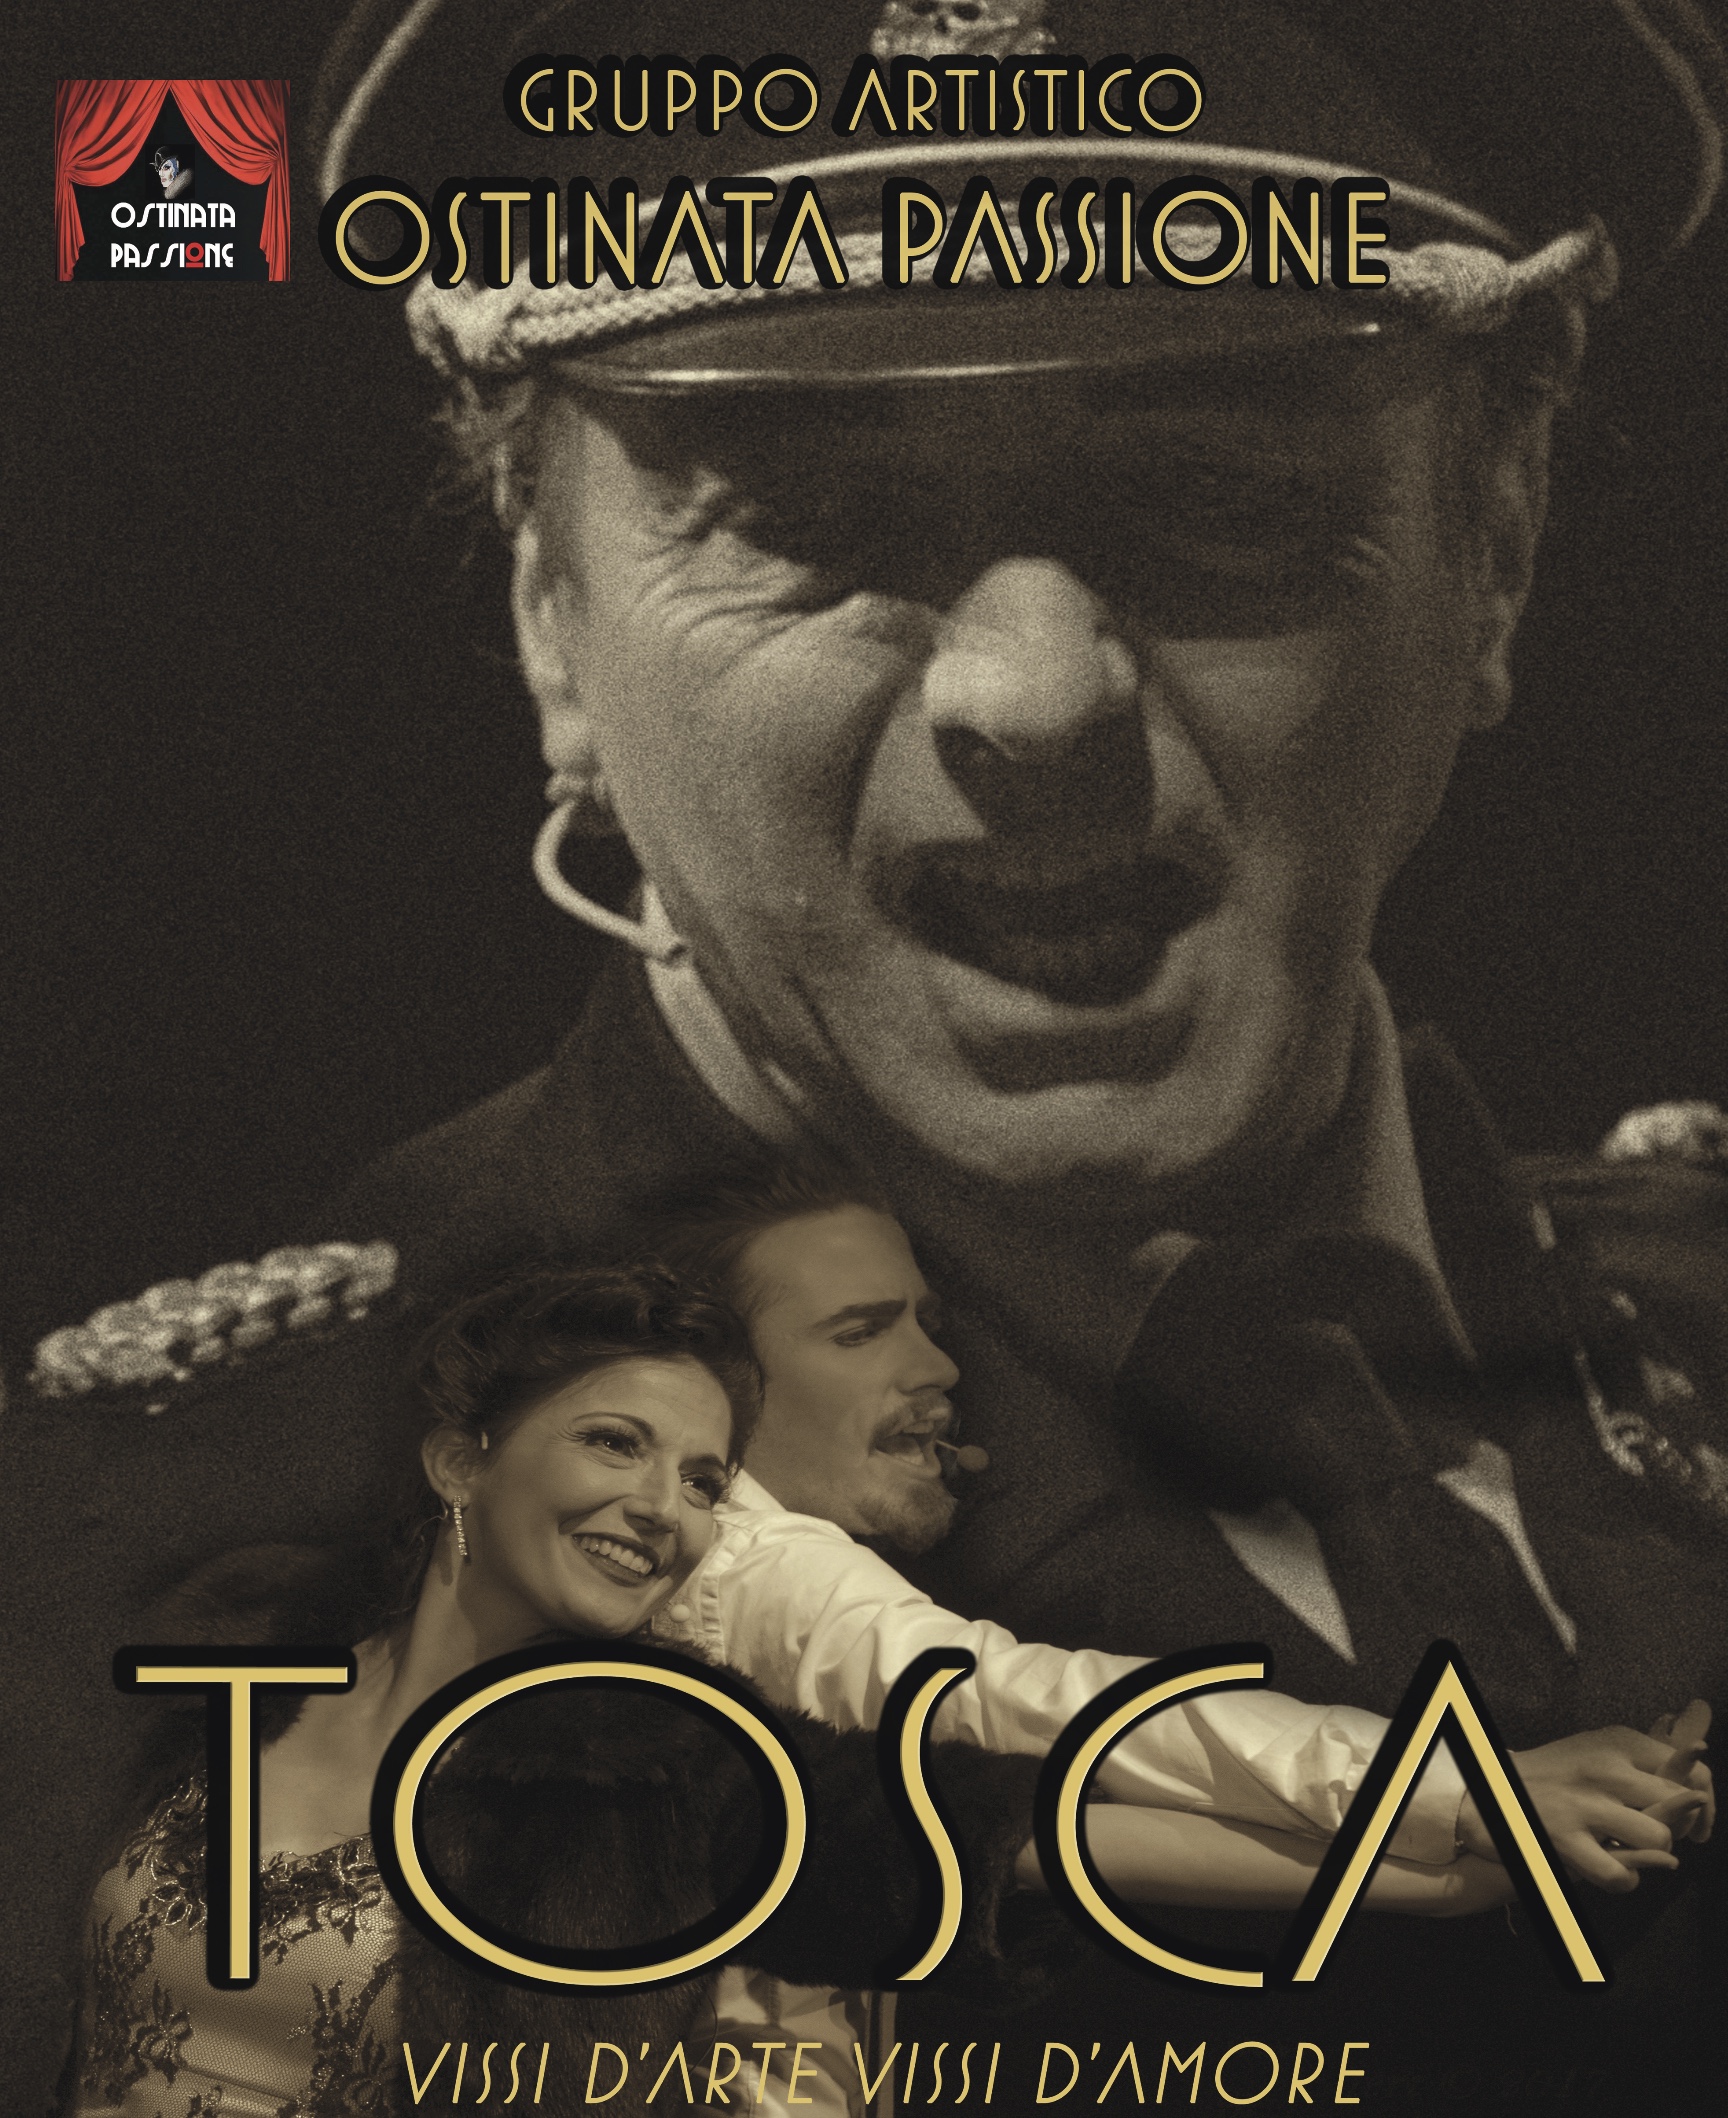 Tosca – Gruppo Artistico Ostinata Passione 7 OTTOBRE 2022 - venerdì ore 21.00